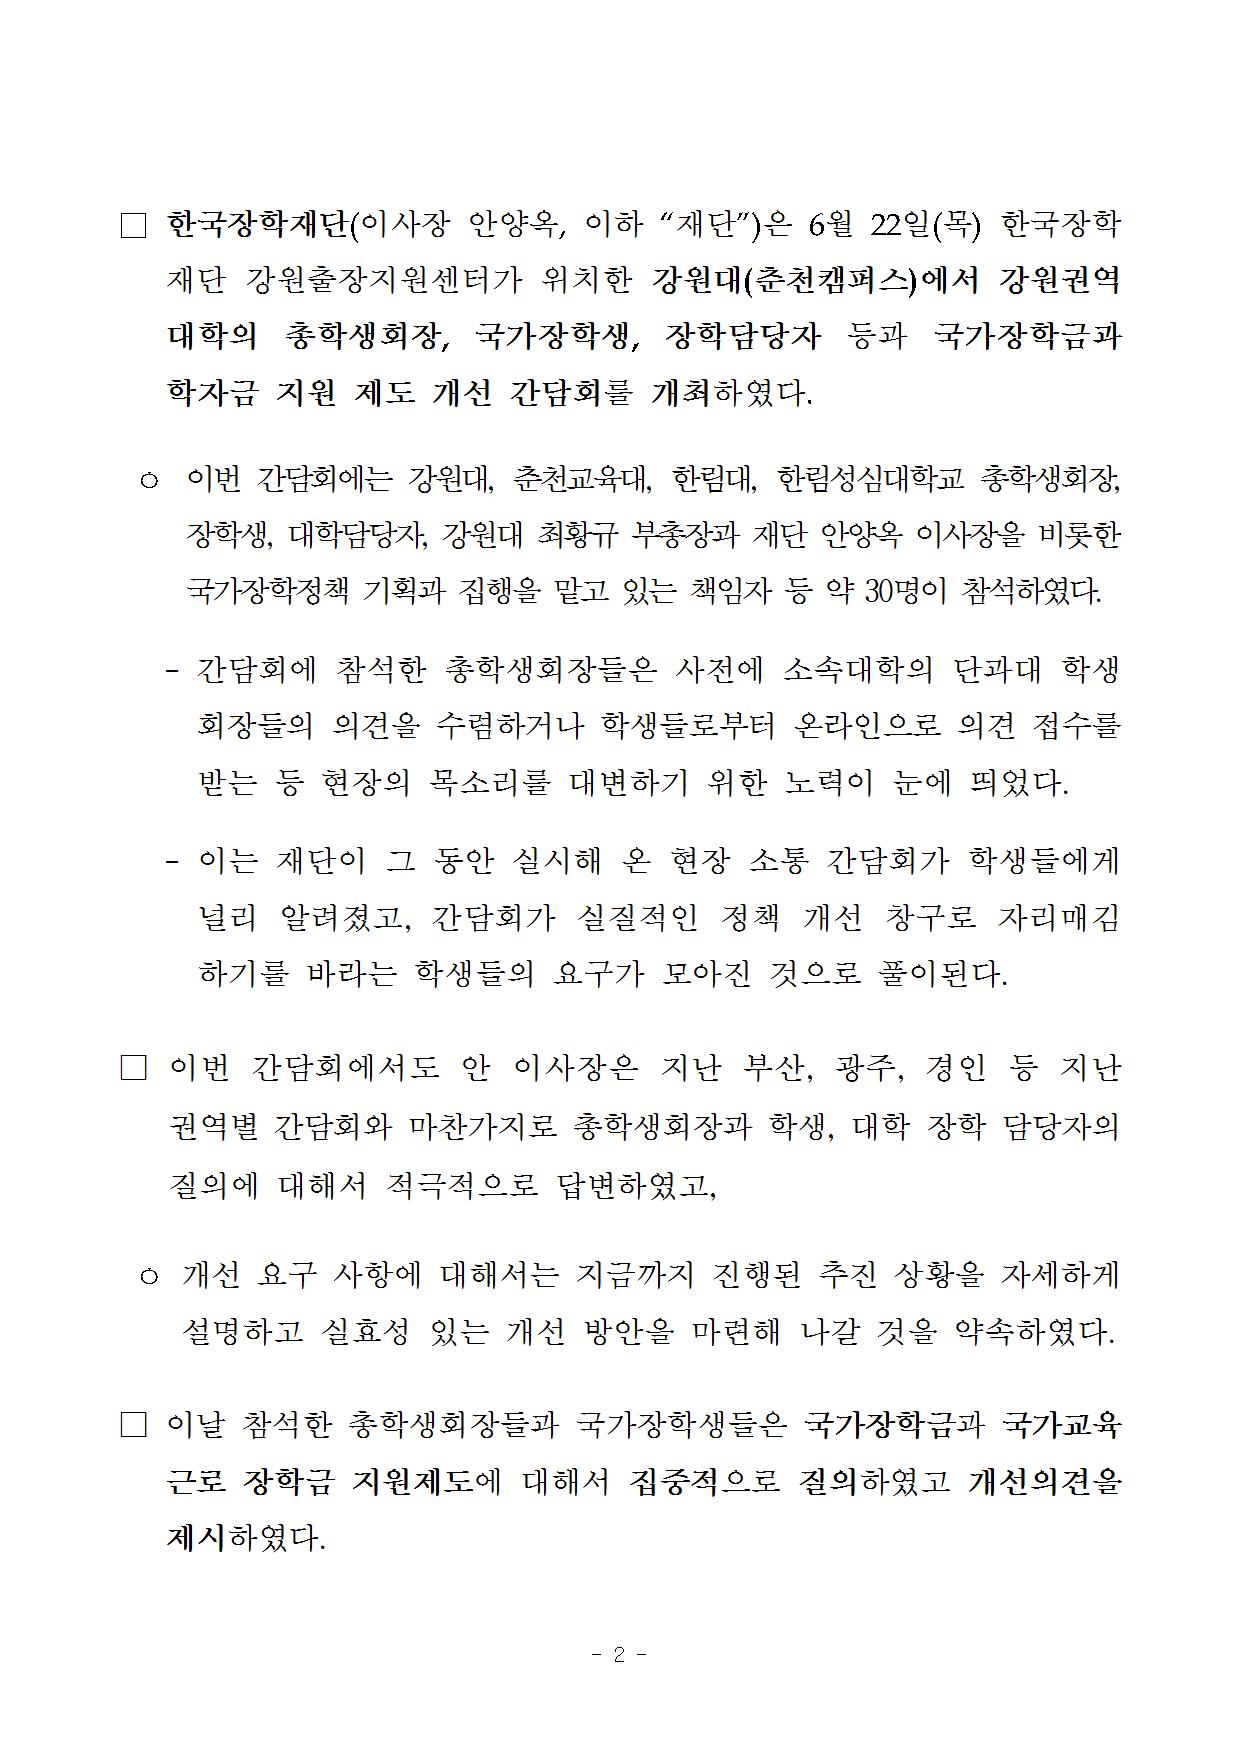 06-23(금)[보도자료] 강원권역 현장 소통 간담회 개최002.jpg